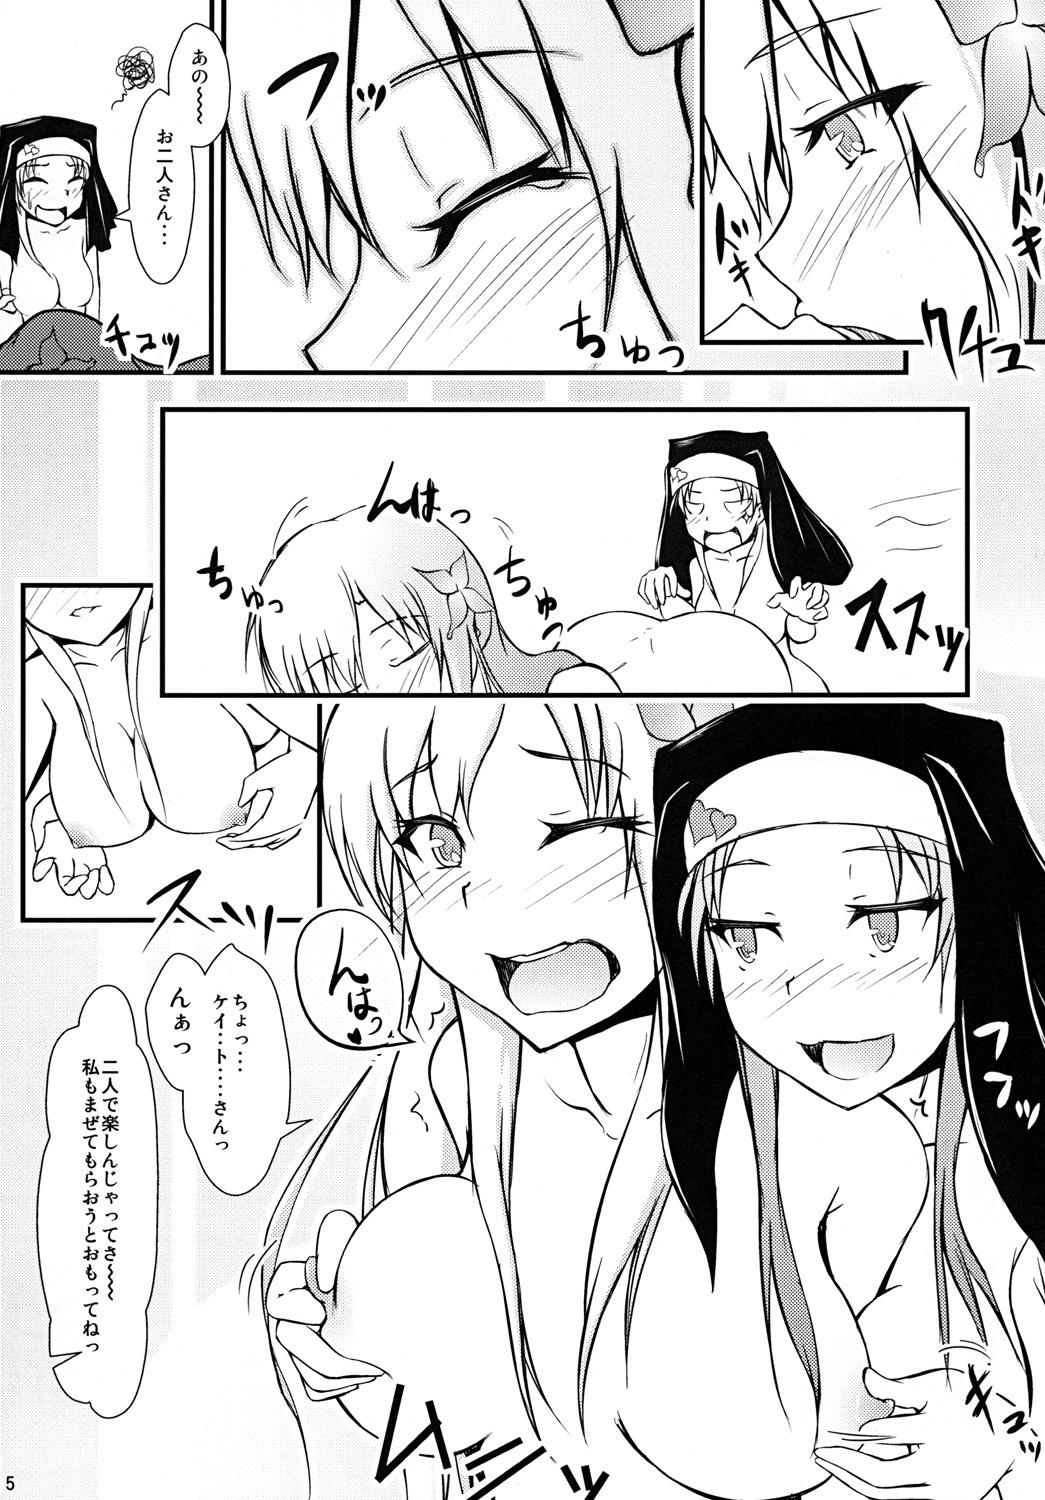 Sucking Dicks Meat or Sister - Boku wa tomodachi ga sukunai Amateurs - Page 5